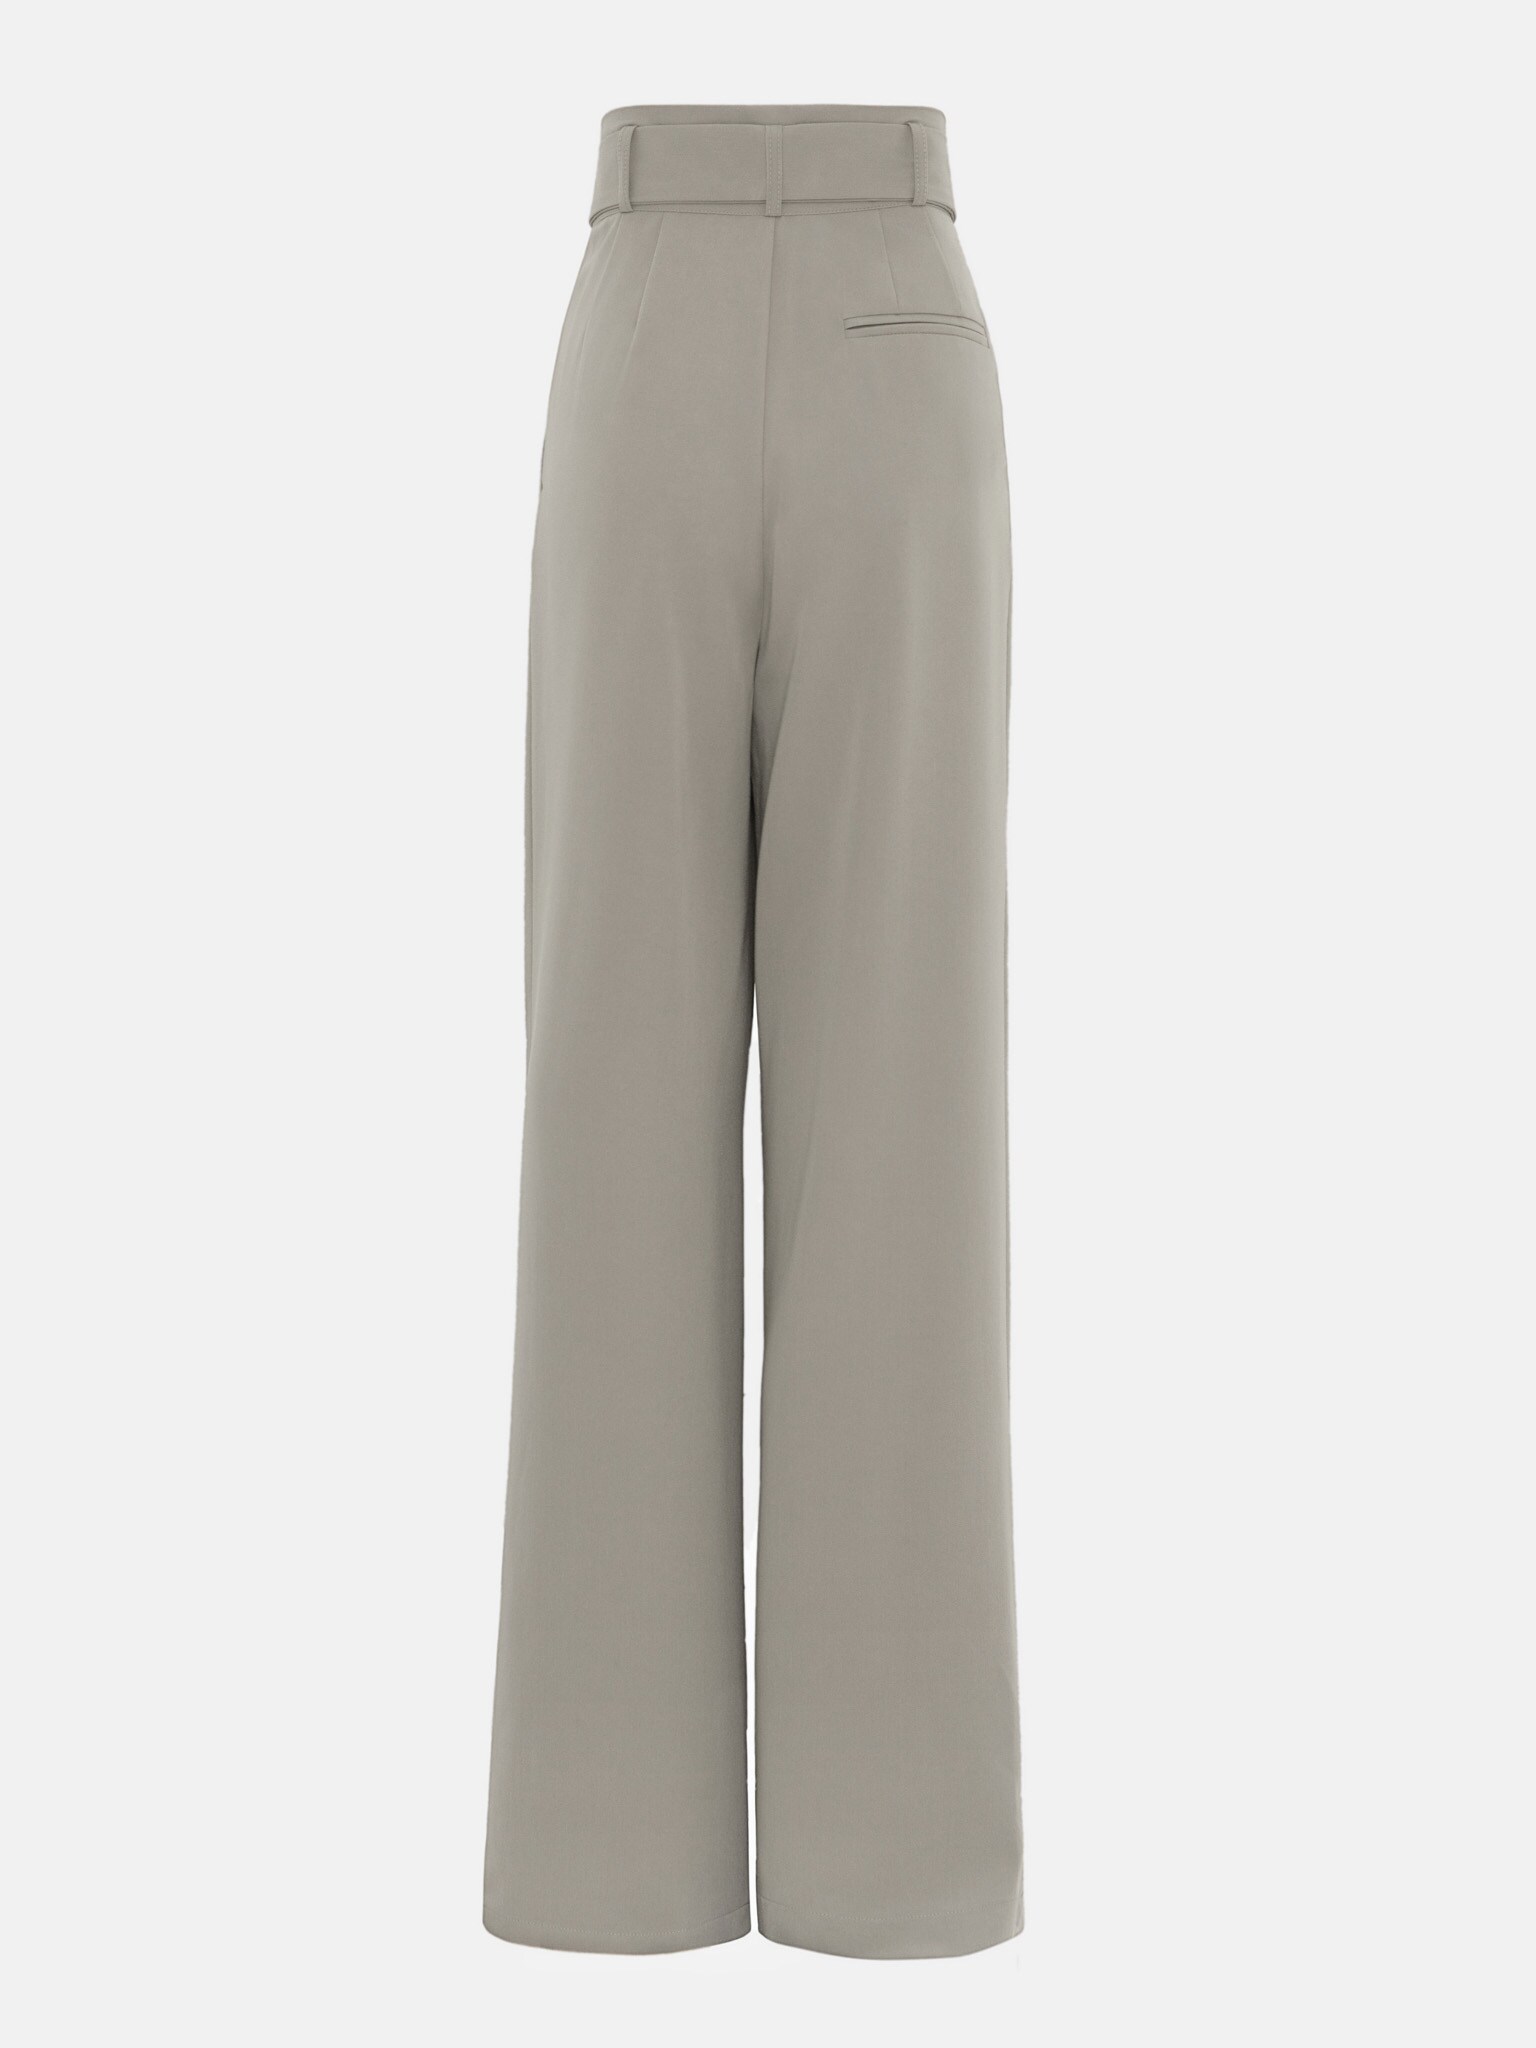 LICHI - Online fashion store :: Belted palazzo pants